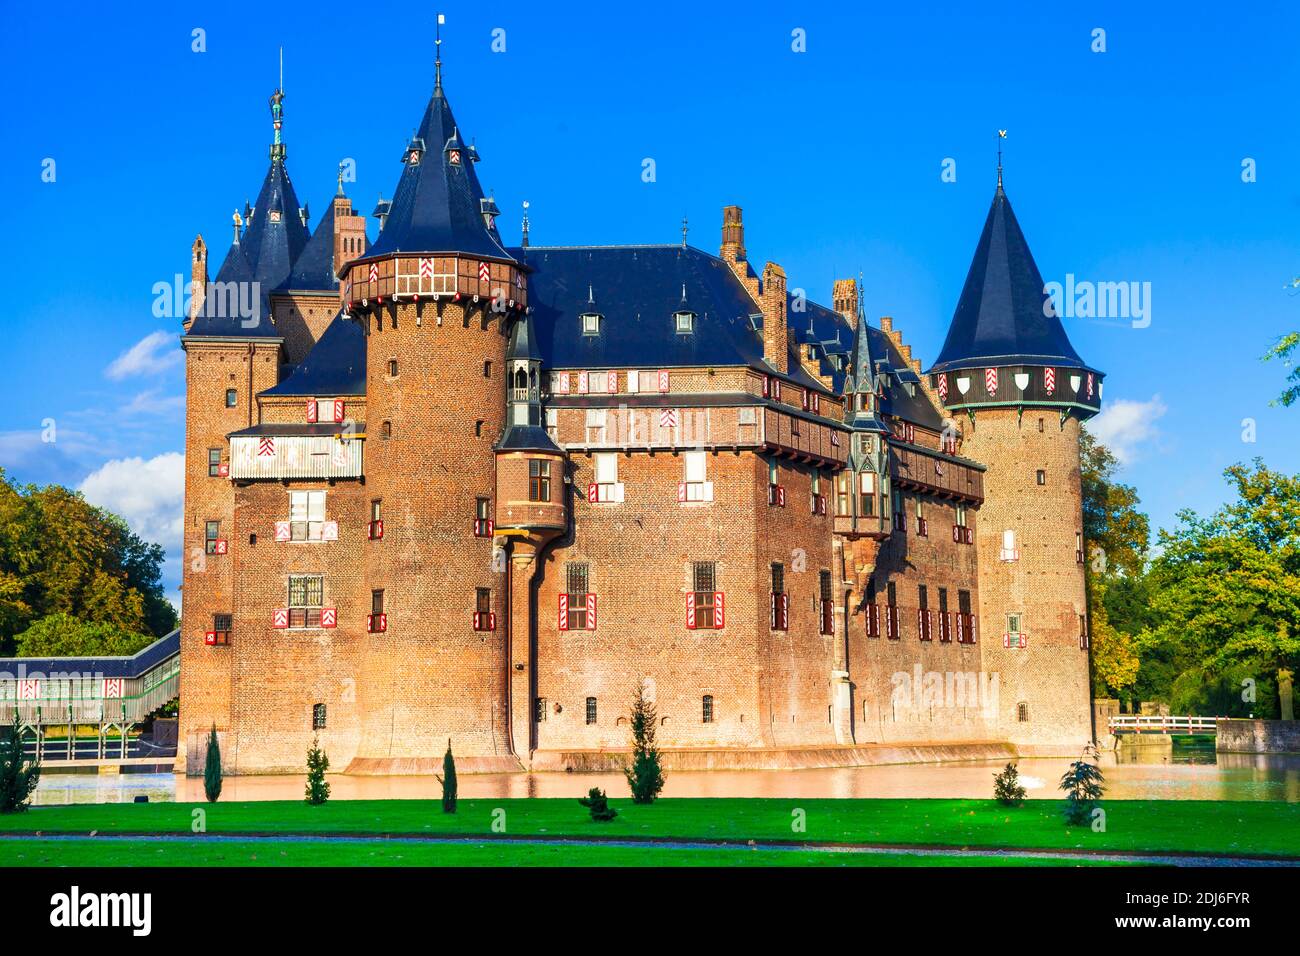 Les plus beaux châteaux médiévaux d'Europe - de Haar en Hollande, ville d'Utrecht, pays-Bas Banque D'Images